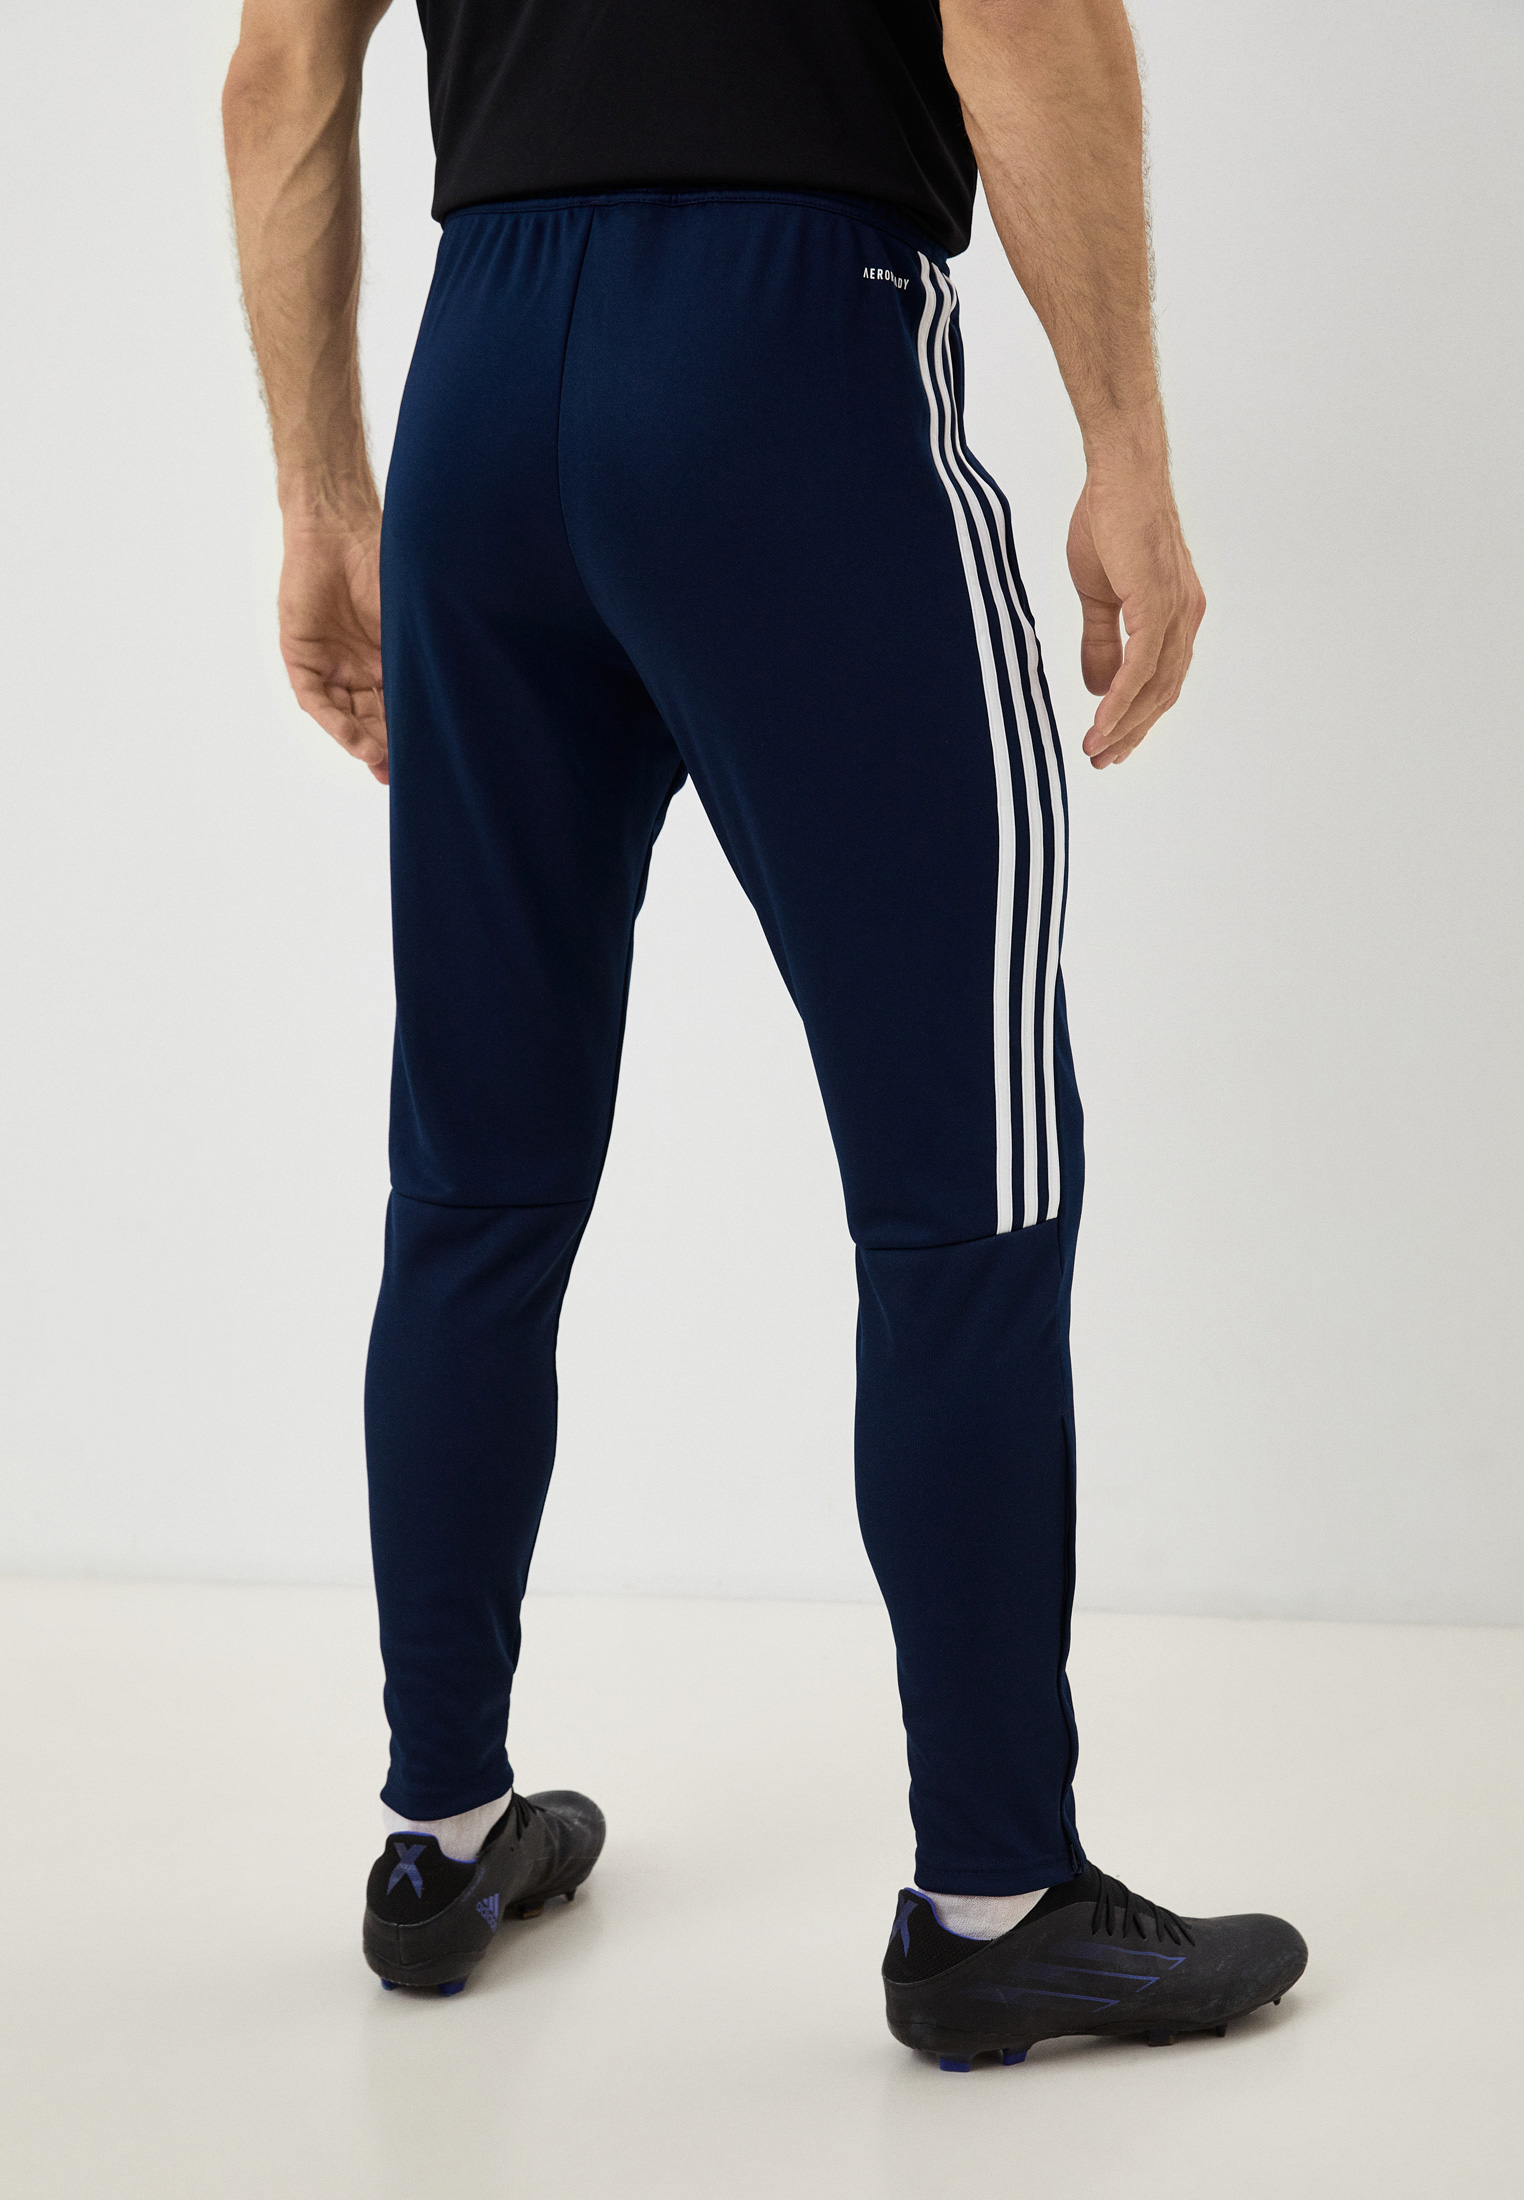 Мужские спортивные брюки Adidas (Адидас) DY3134 купить за 4999 руб.